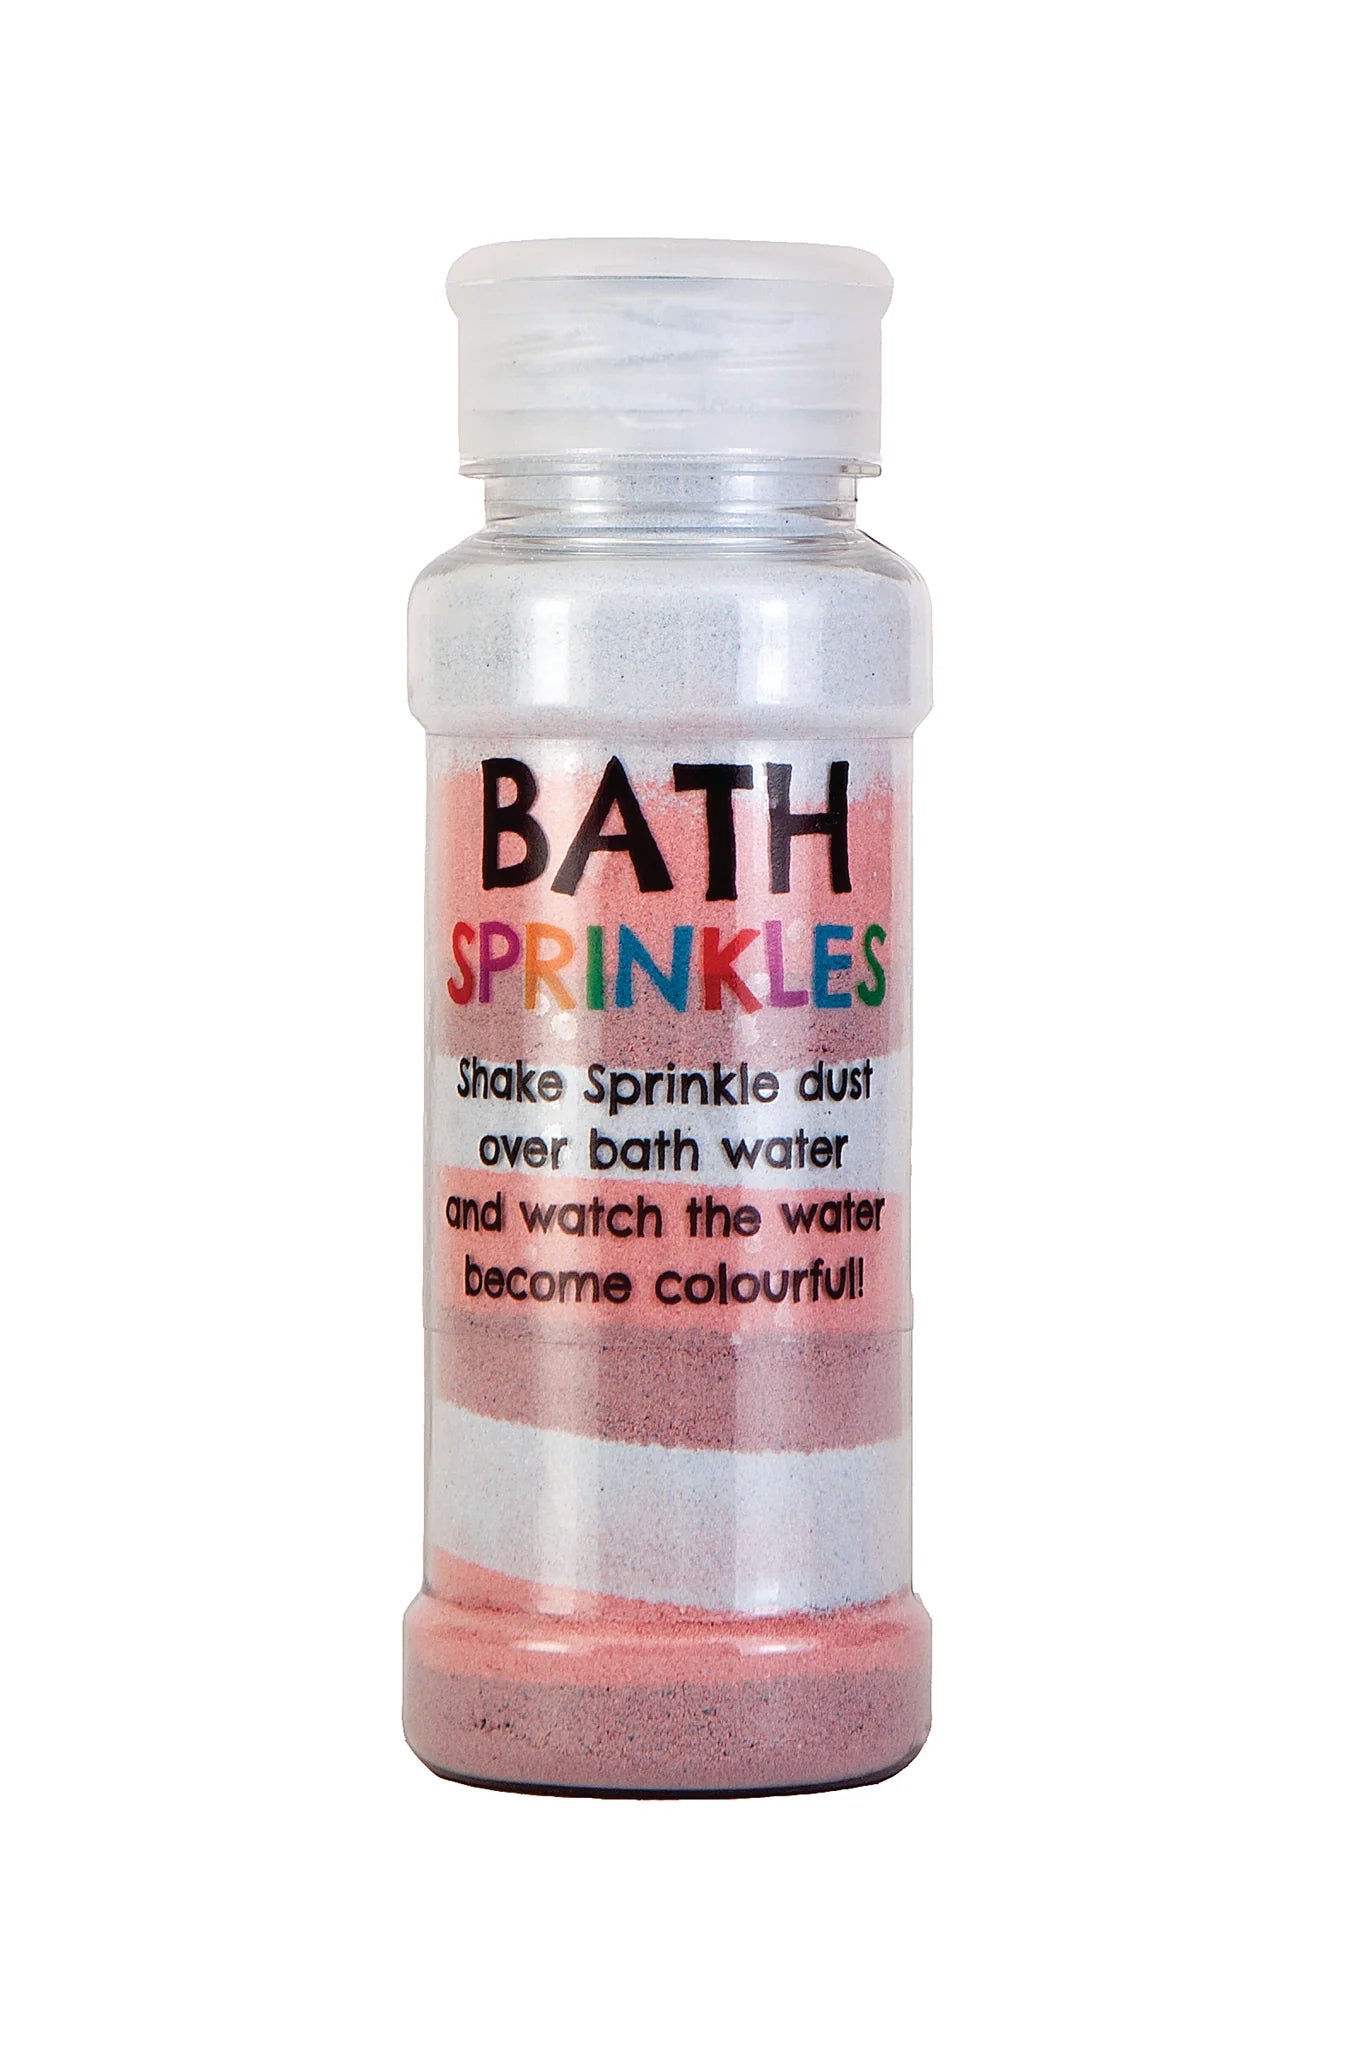 bath buddies bath sprinkles